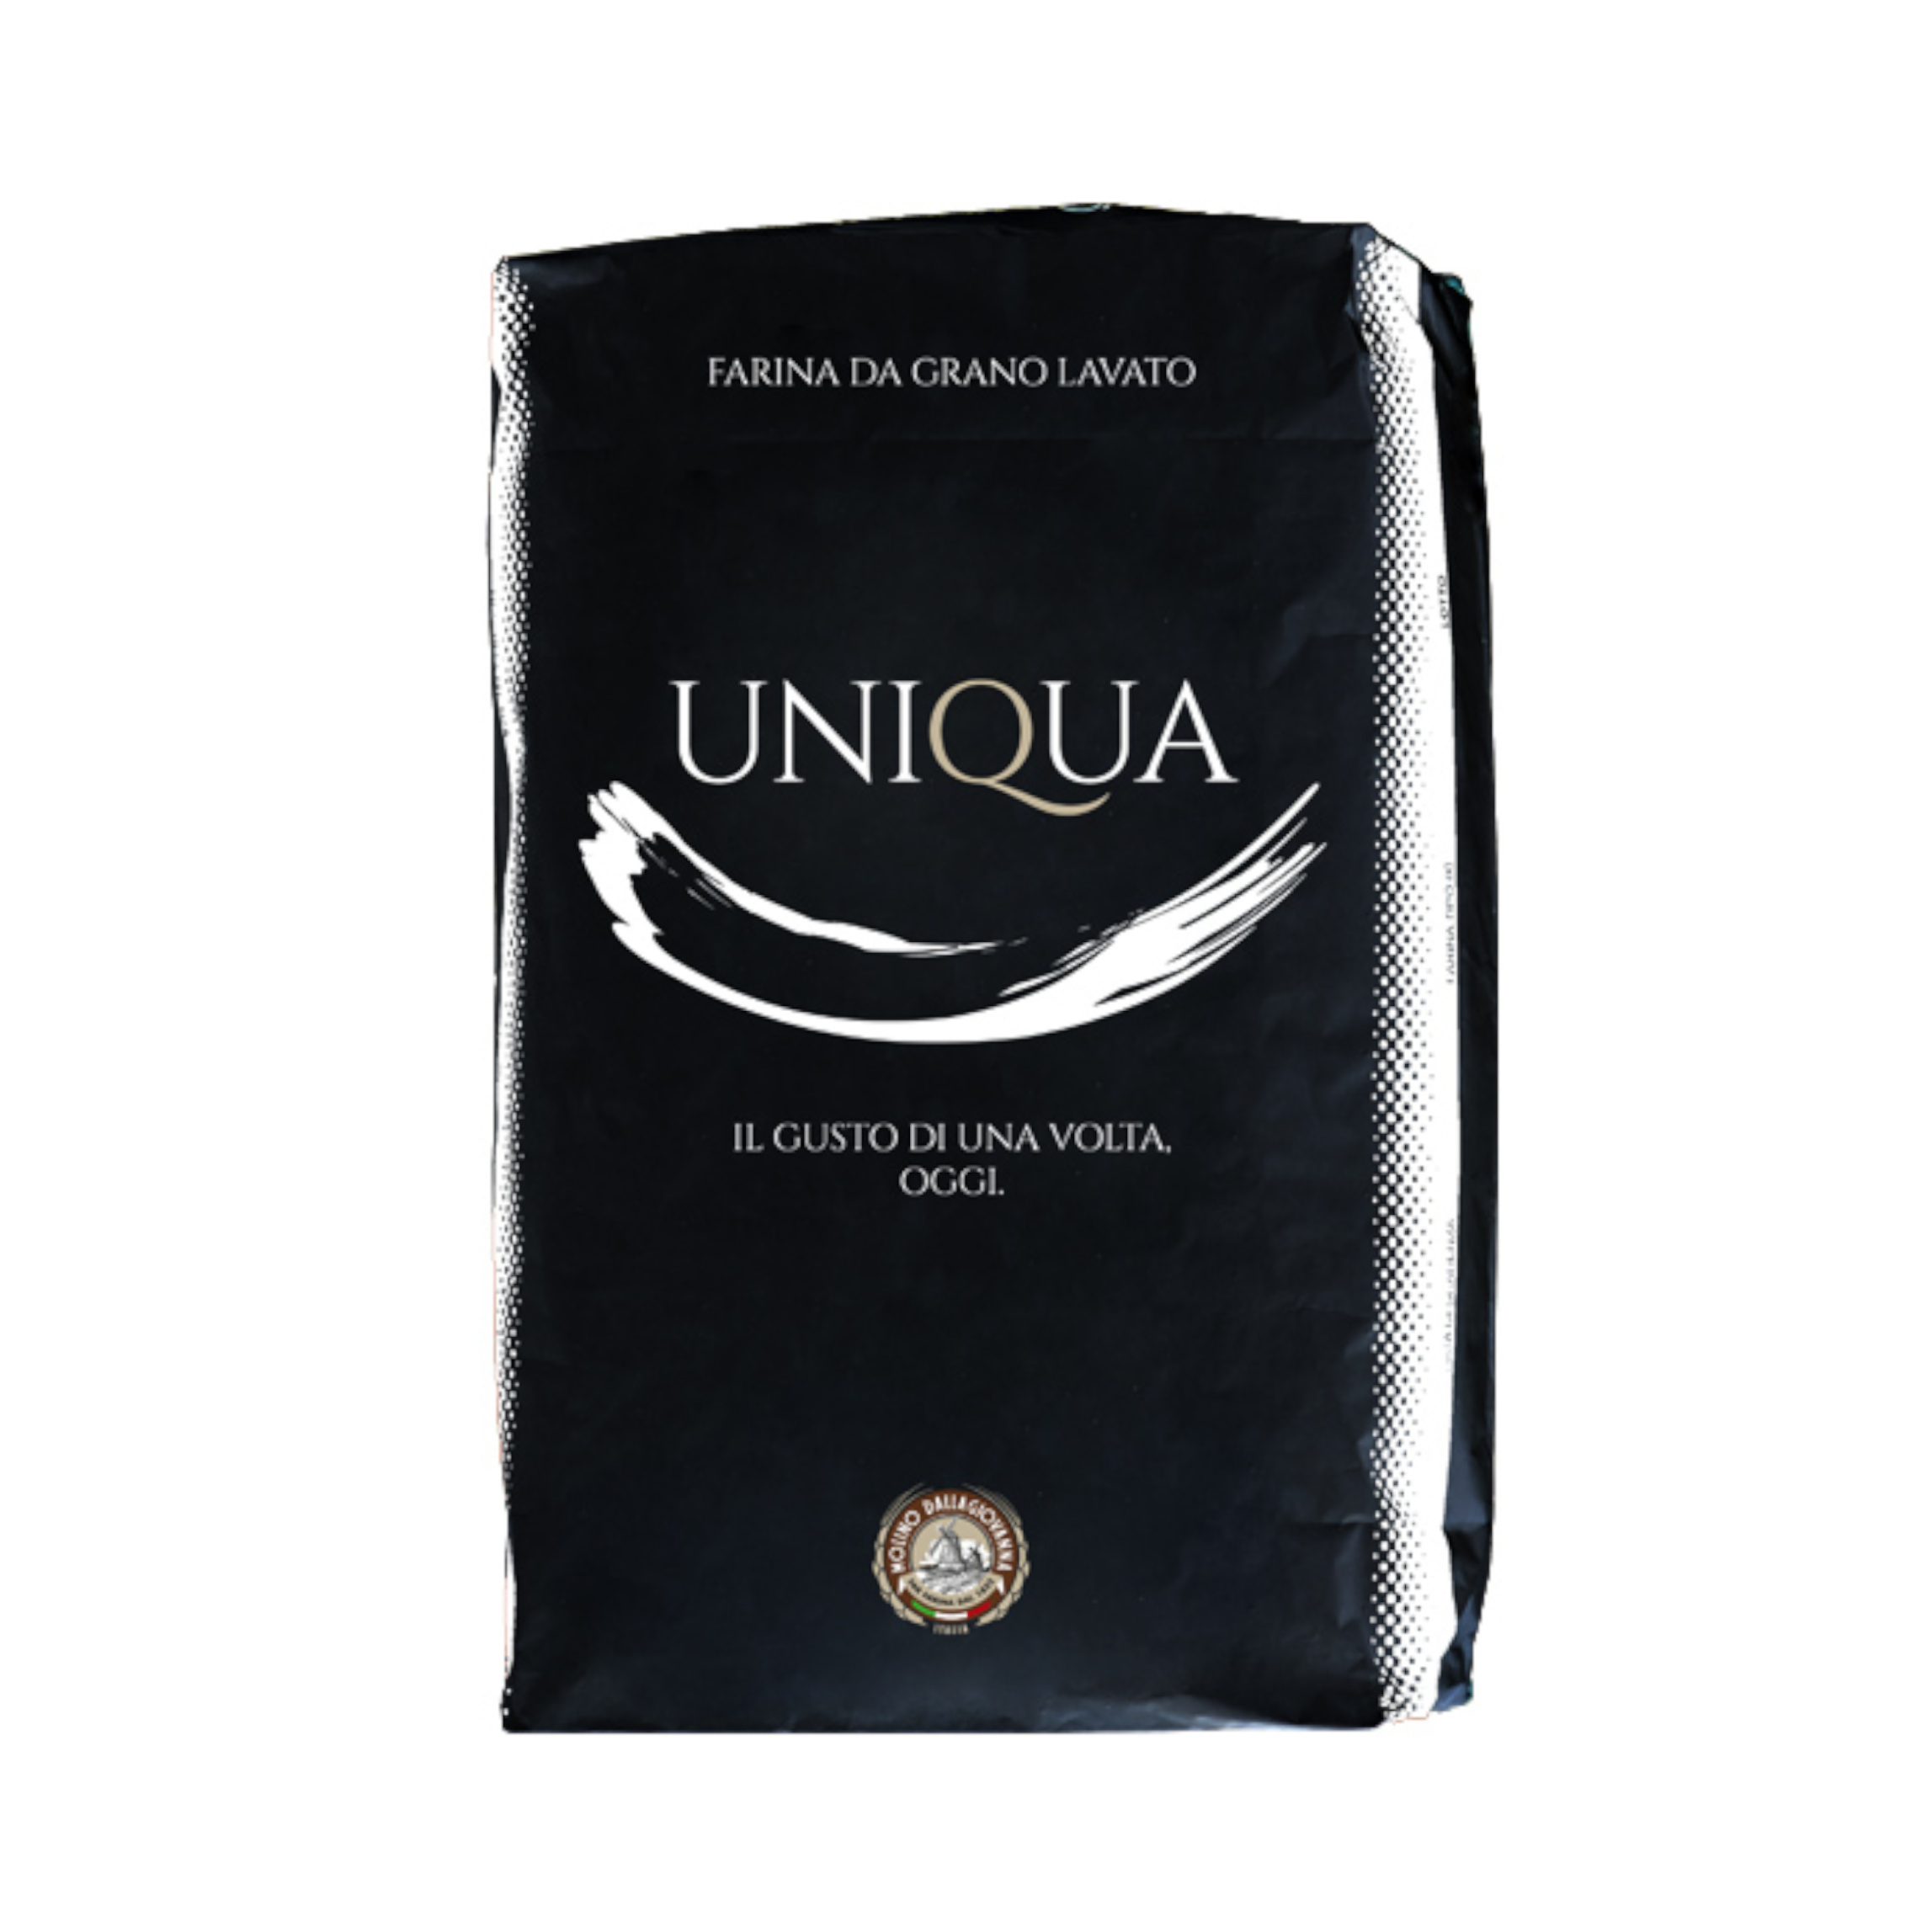 Farina “1” Uniqua Bianca W180 sacchetto da 1kg